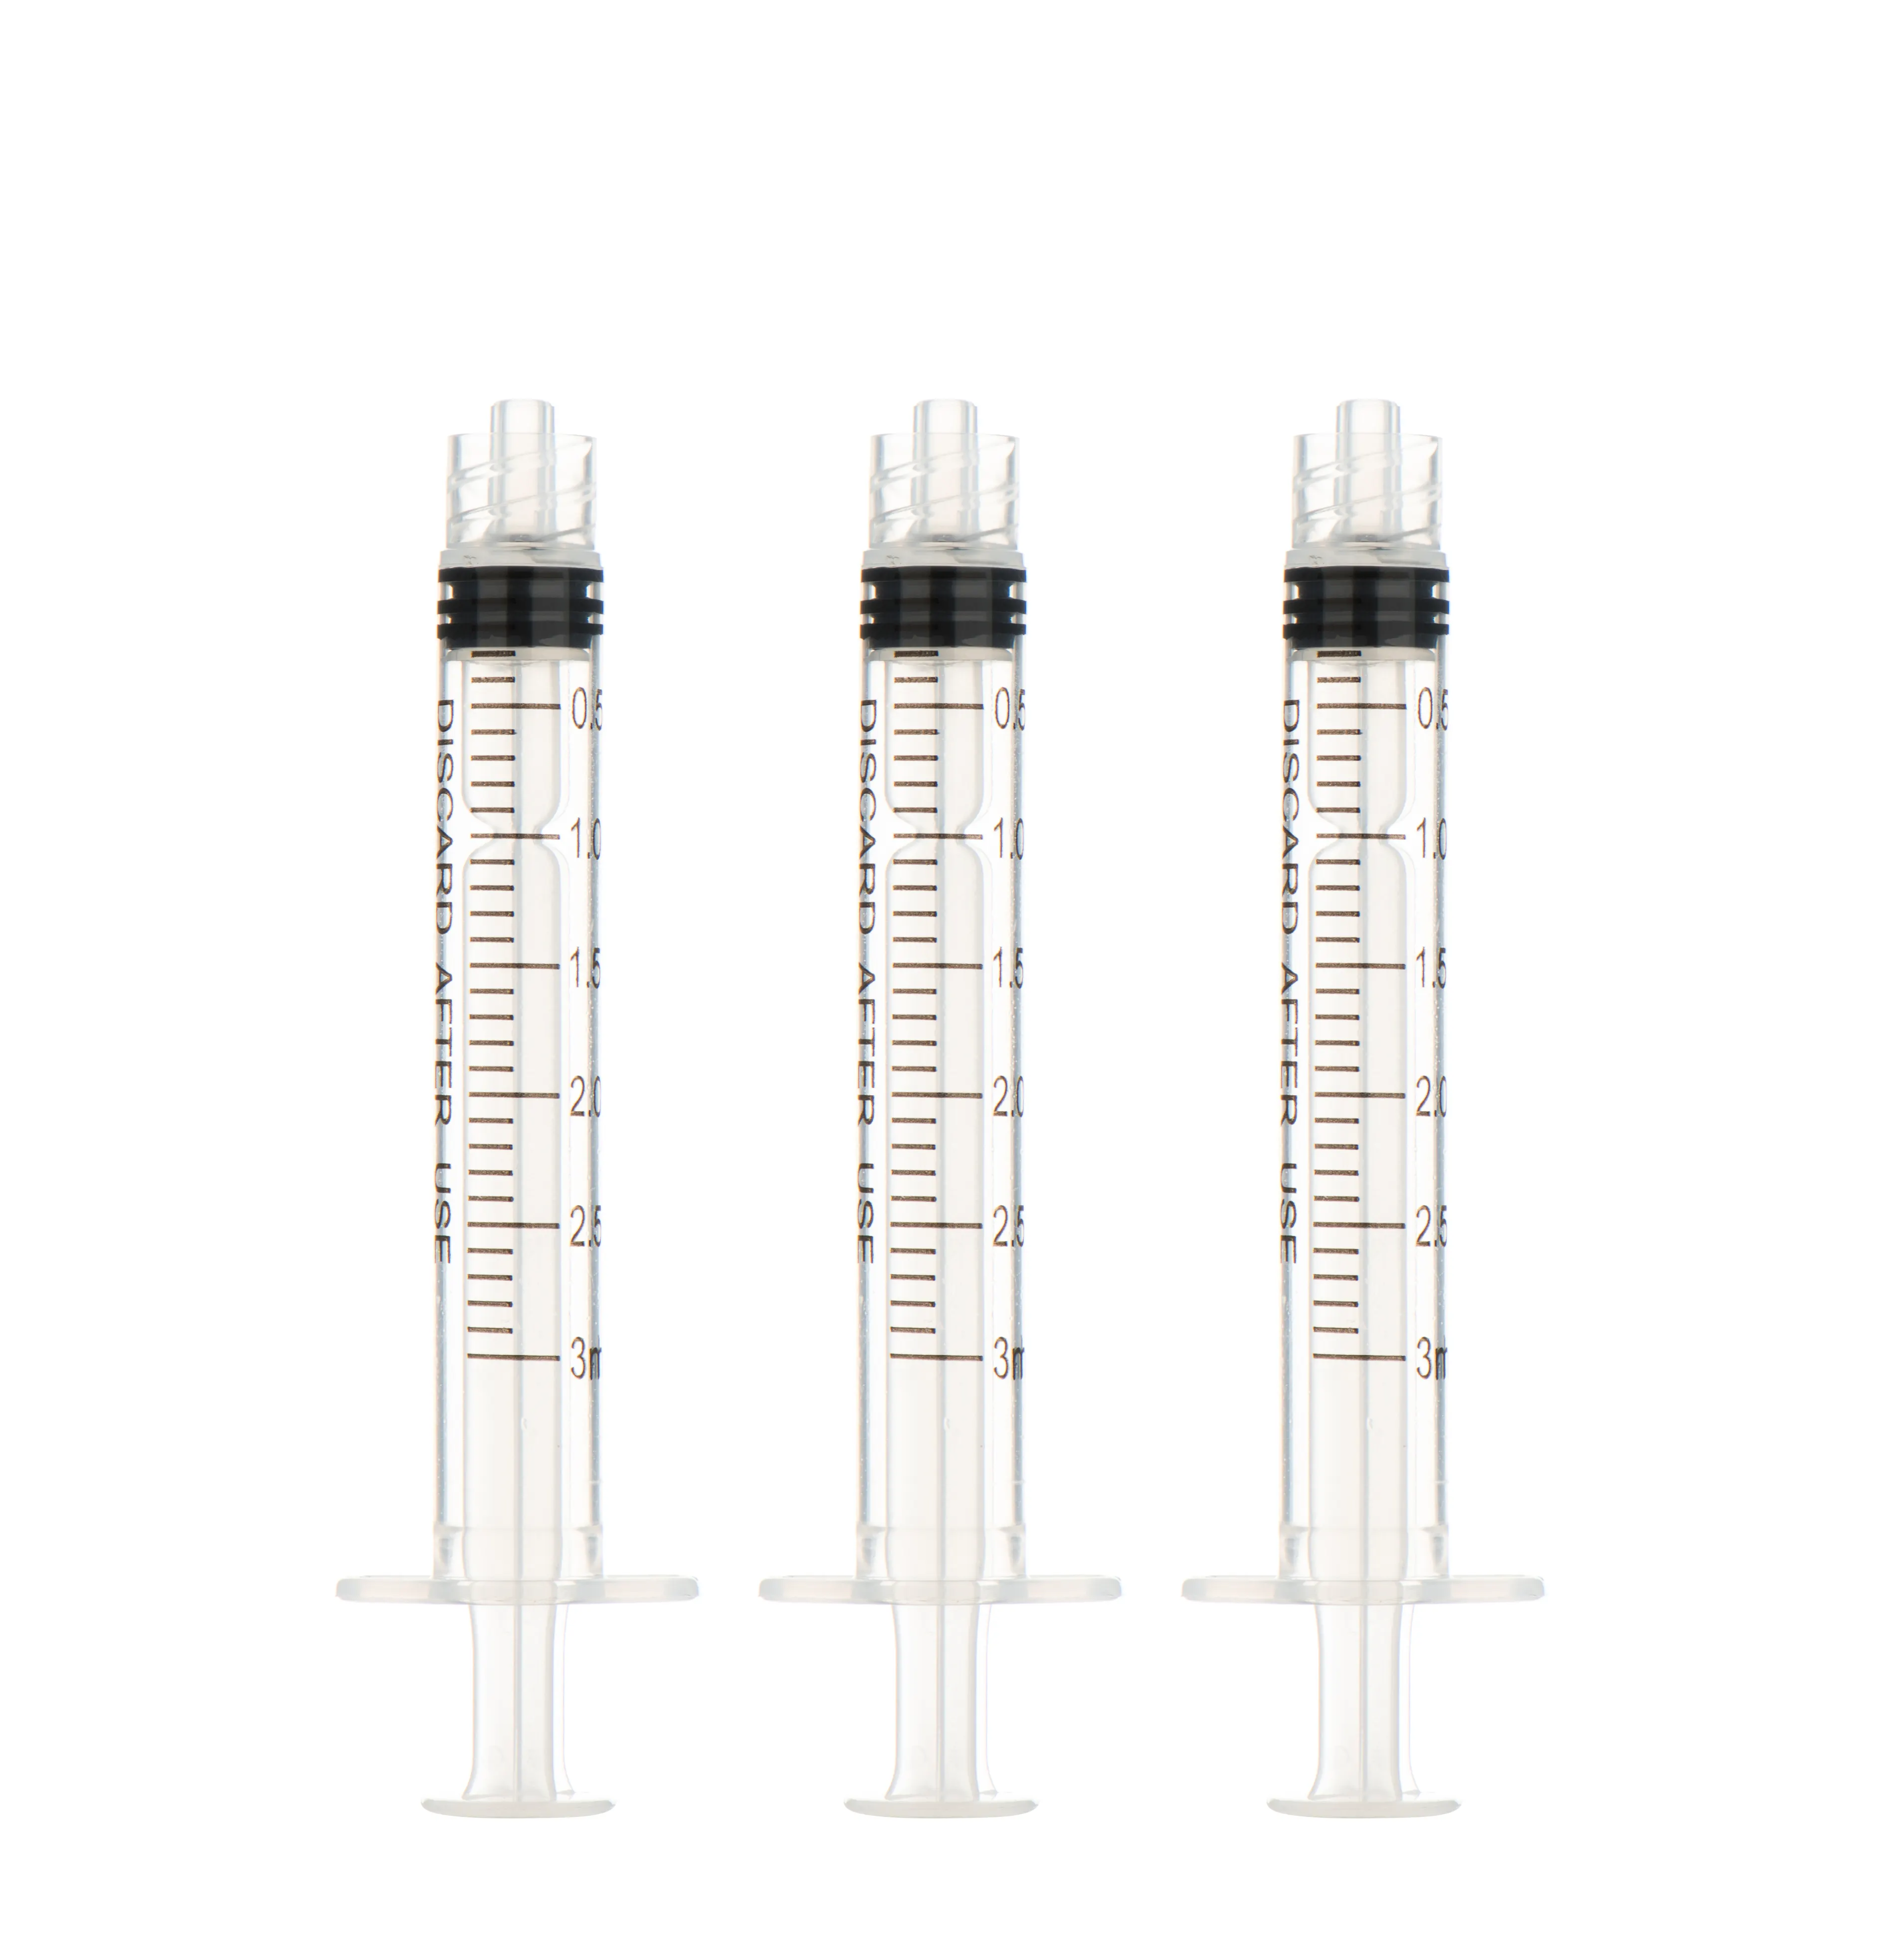 Sn004 seringa descartável para injeção de fechadura, zogear, para odontologia ou médica